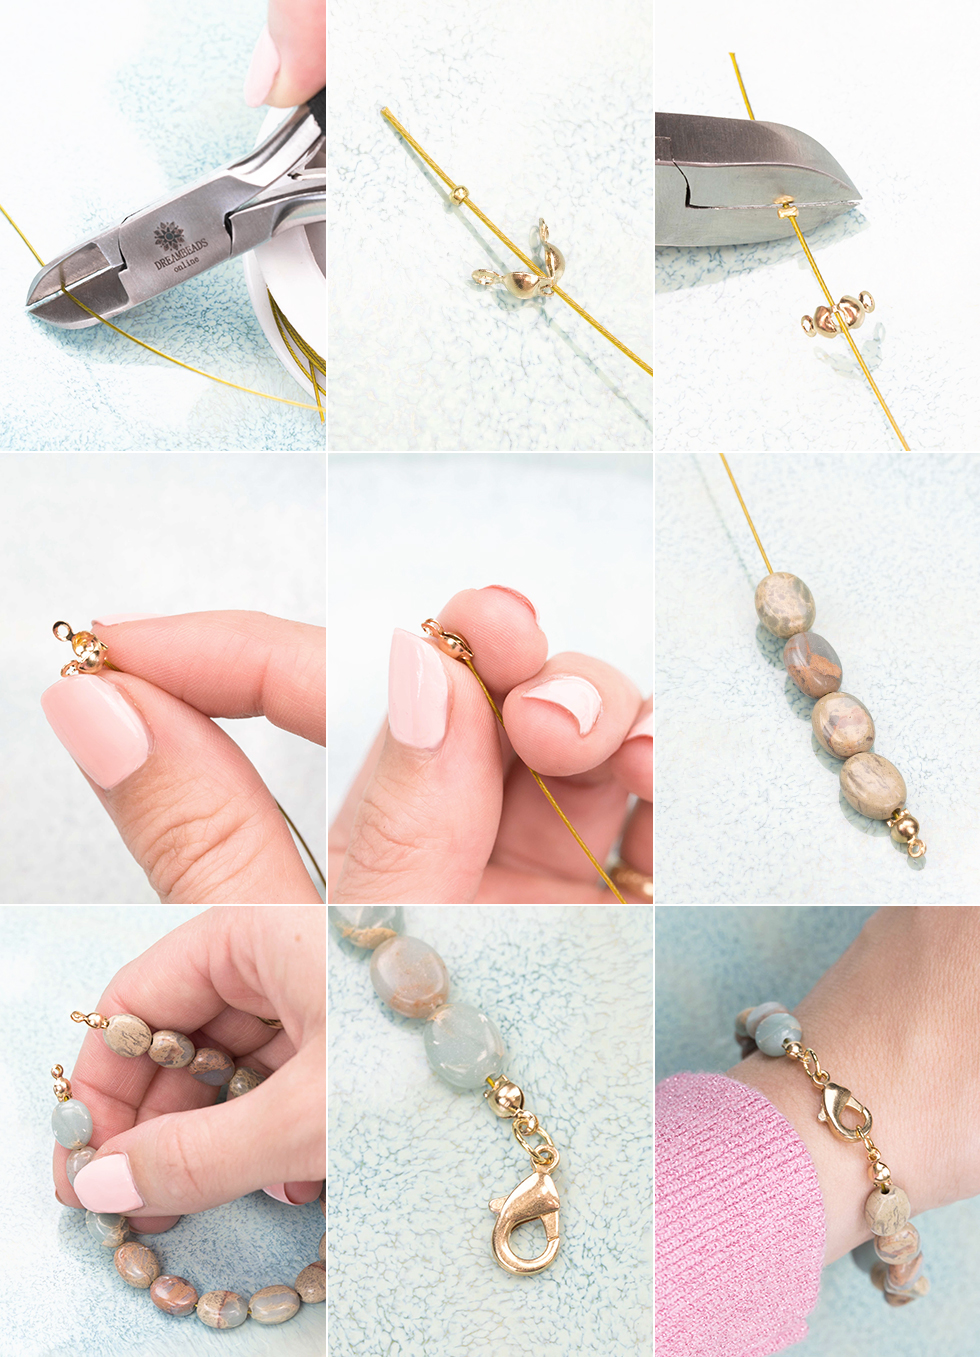 Clasp Making Jewelry Bracelet  Closures Bracelets Necklaces